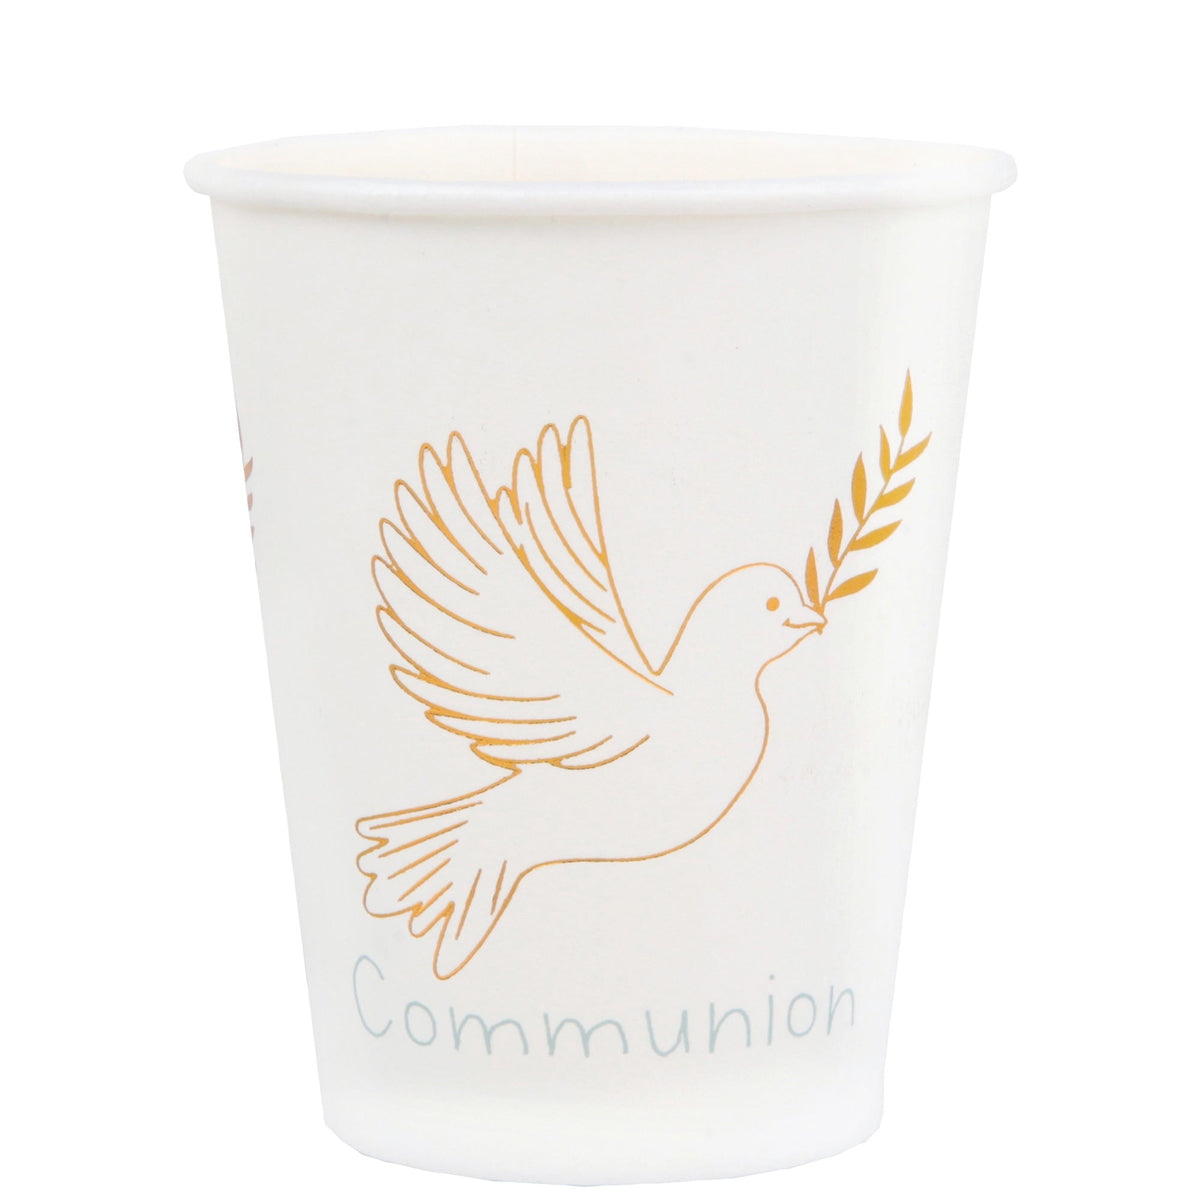 SANTEX Religious Communion Party Paper Cups, 9 Oz, 10 Count